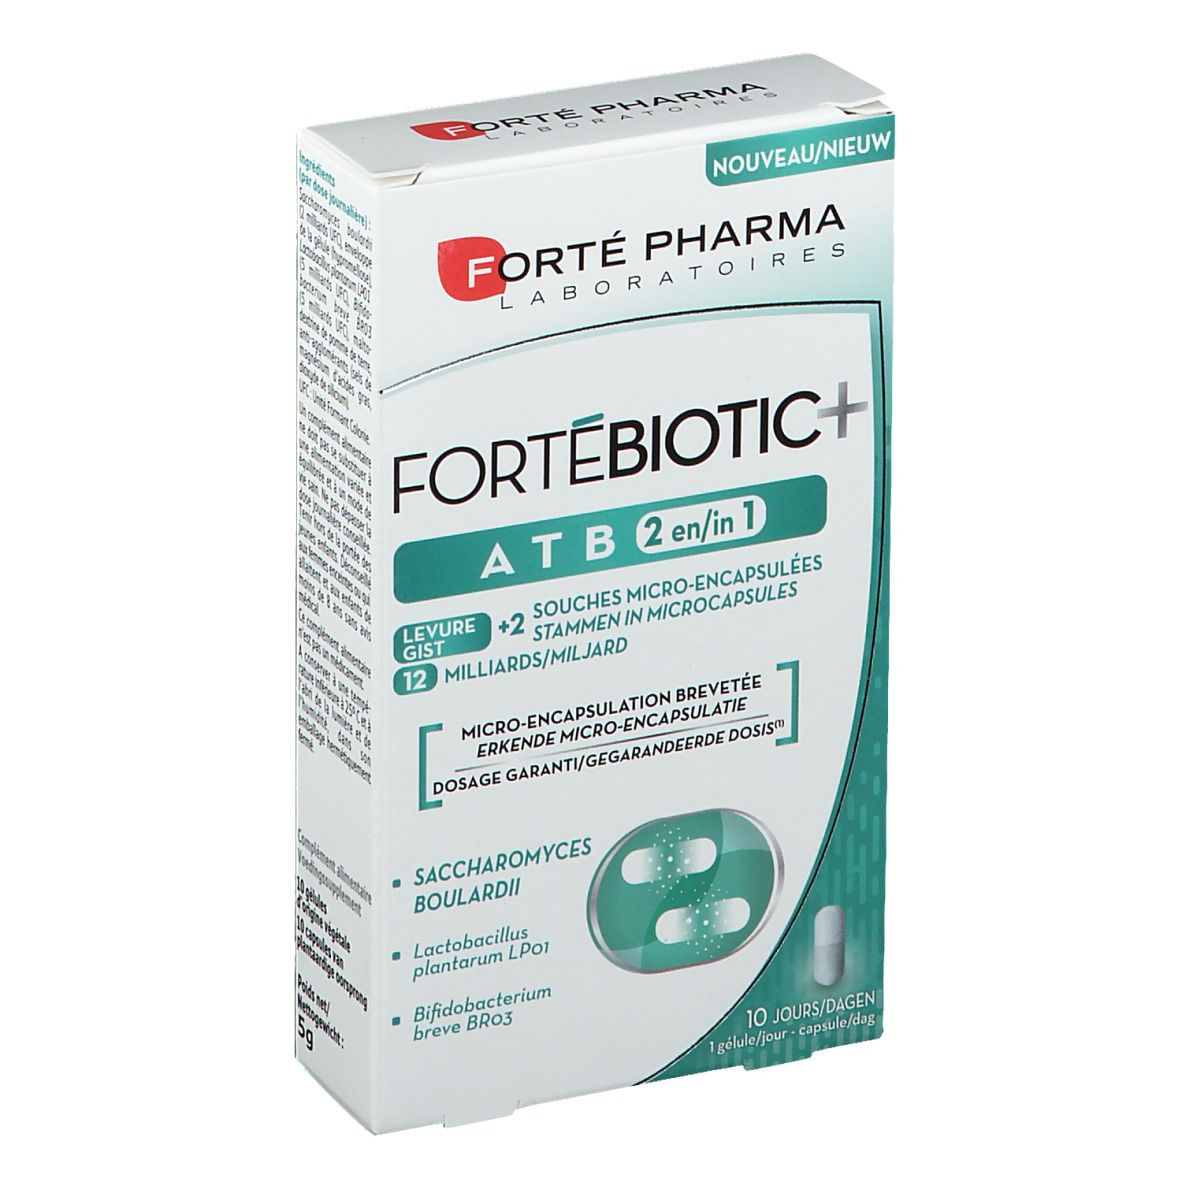 Forté Pharma Fortébiotic+ ATB 2 in 1